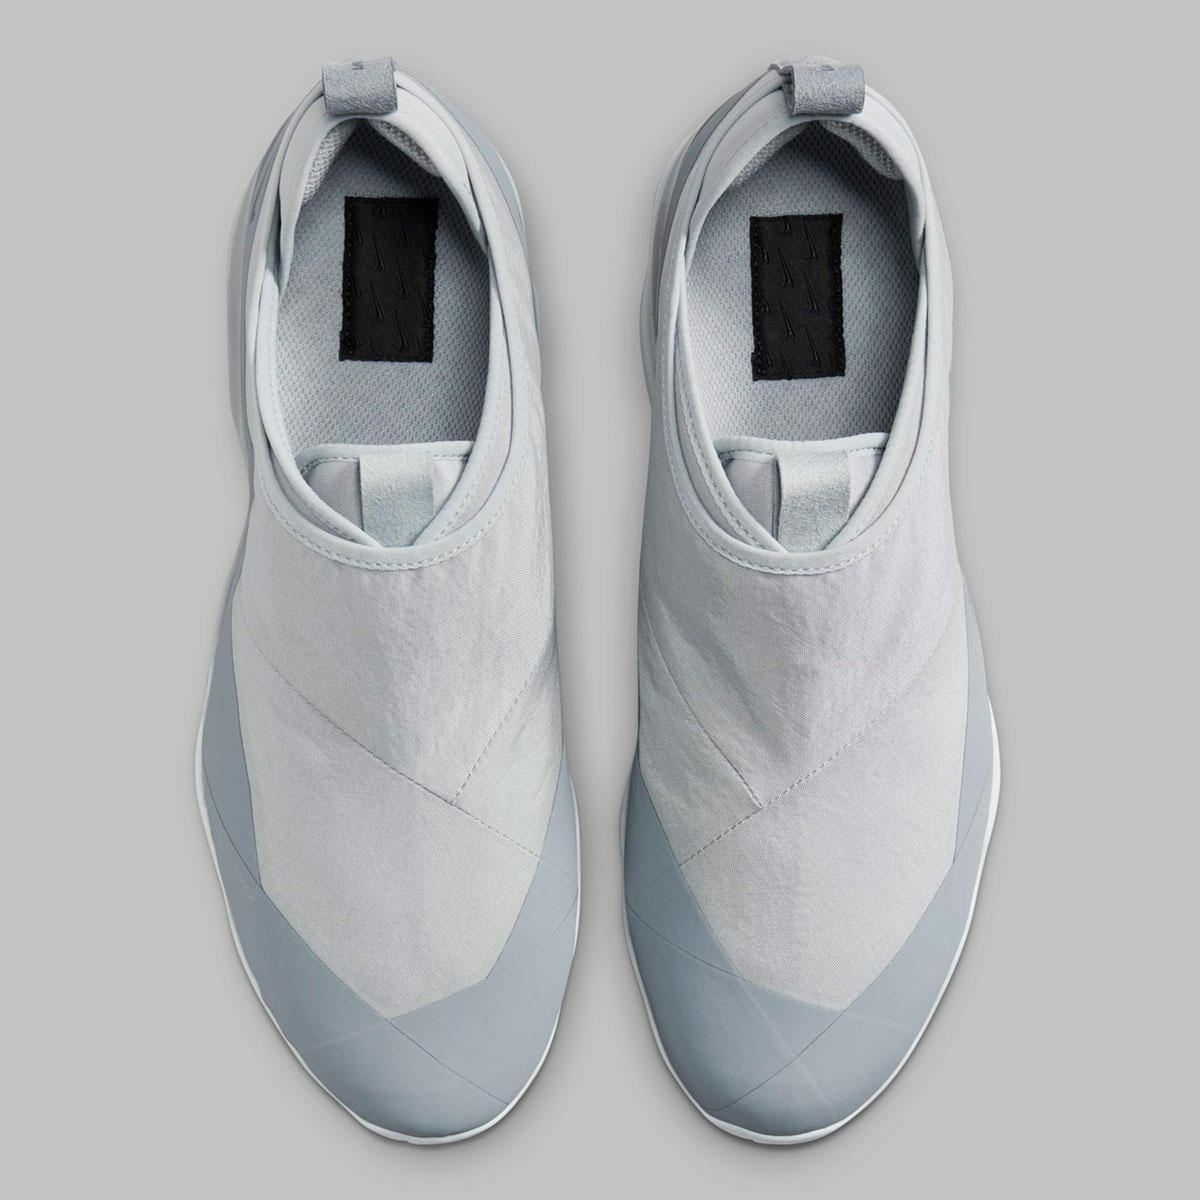 Nike Zapatillas Court Borough Low 2 Jr Niño Sneakers Blanco 9C Cool Grey Dz7273 002 5